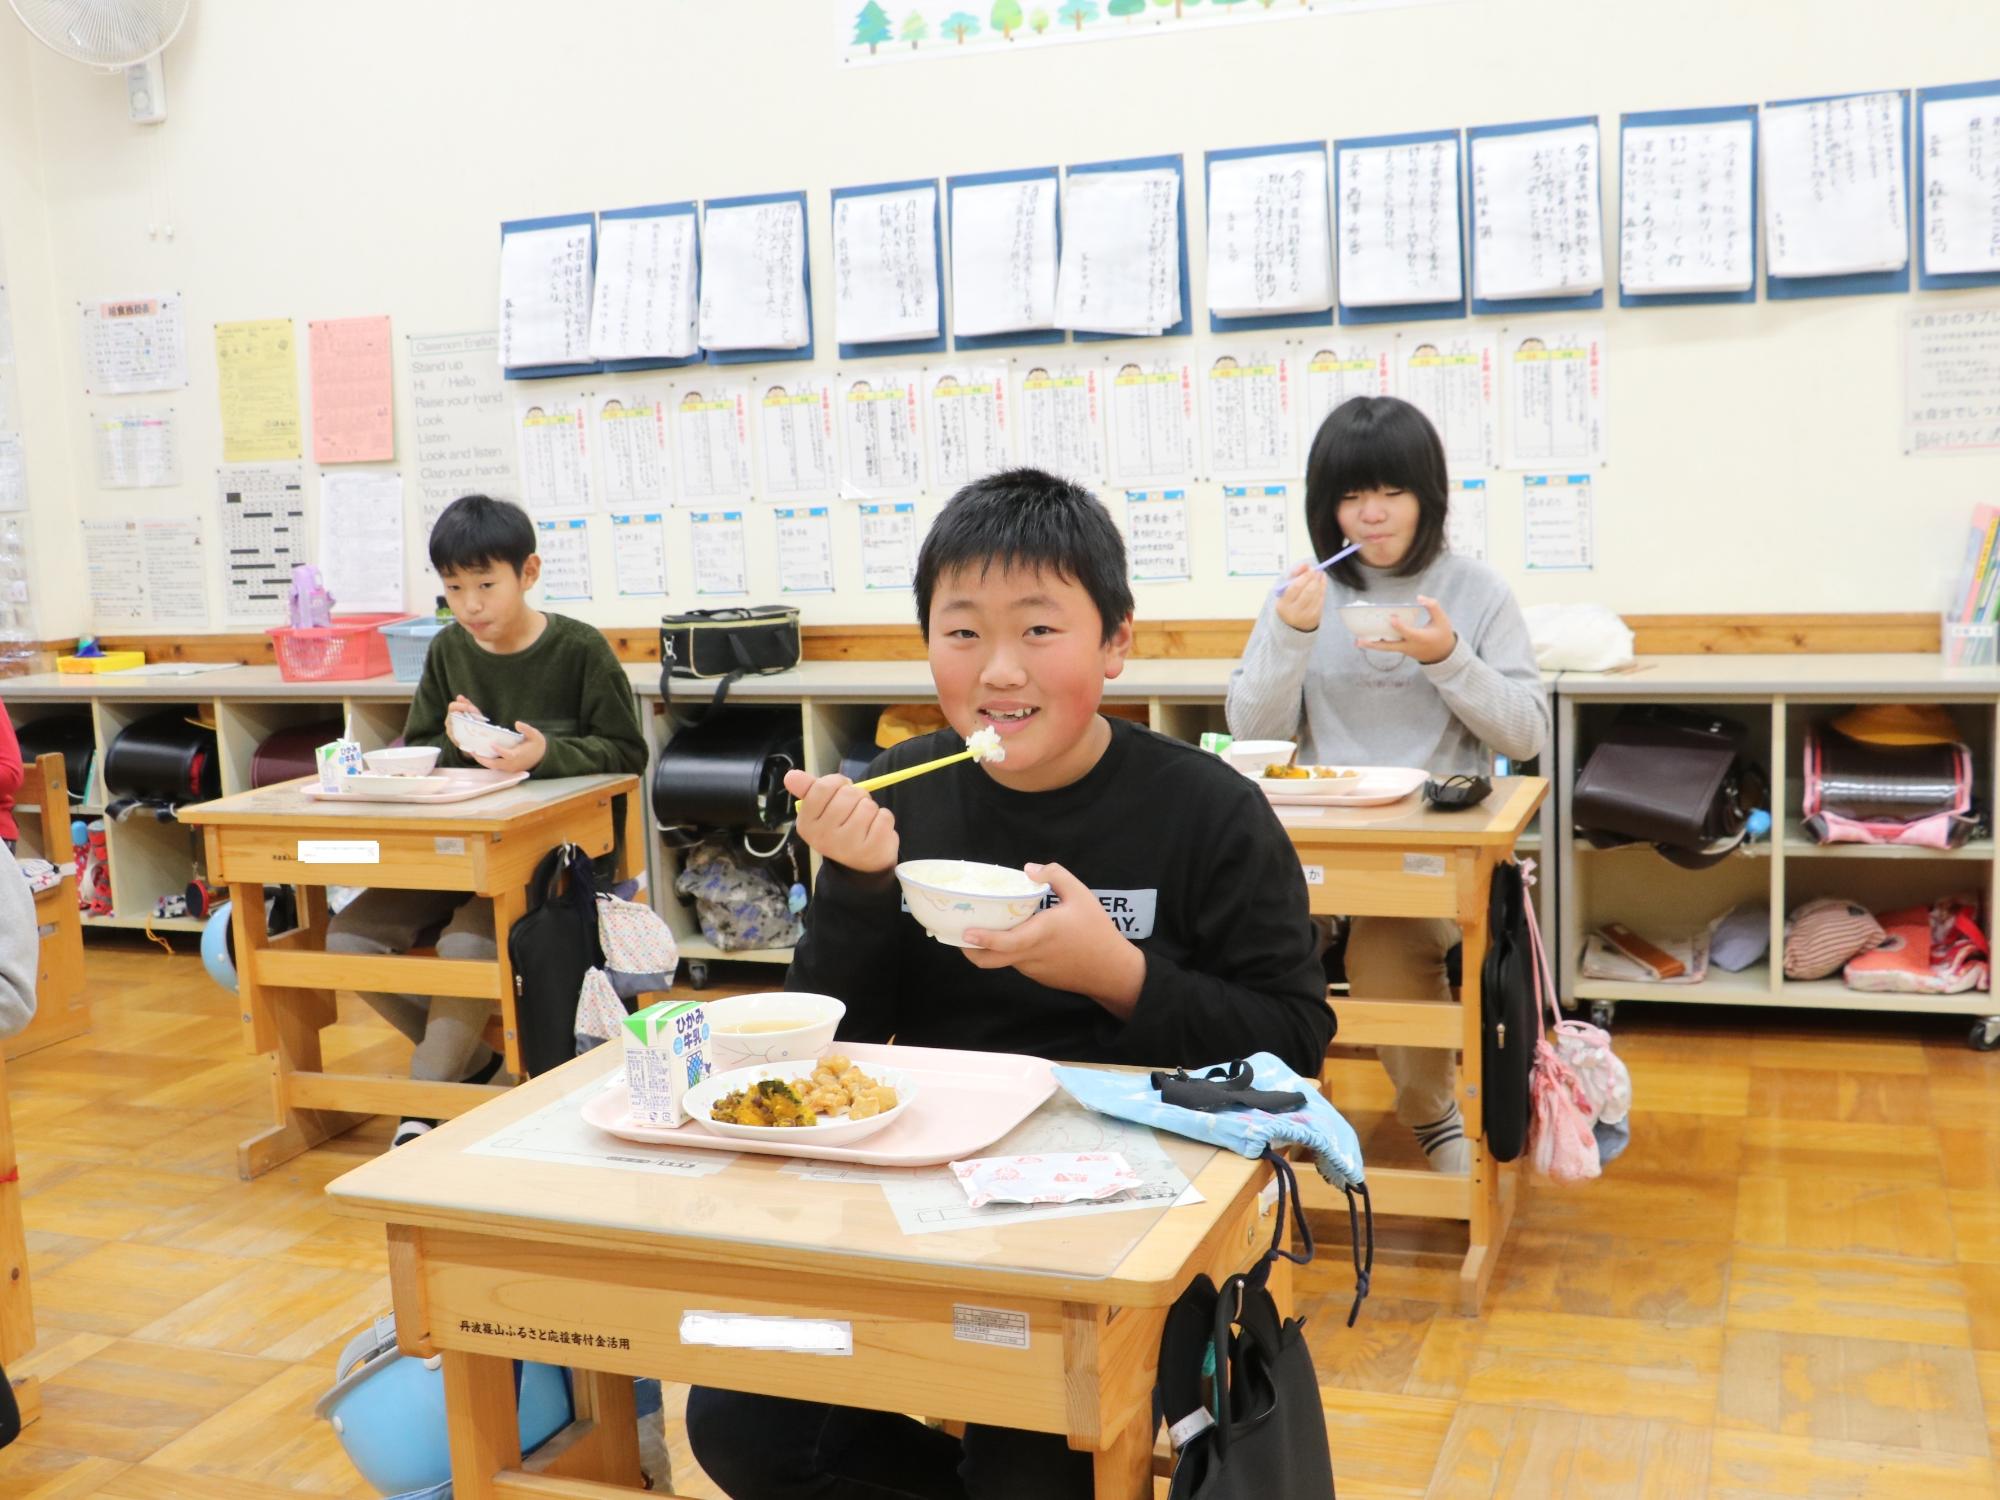 教室で給食を食べているこどもたちの写真